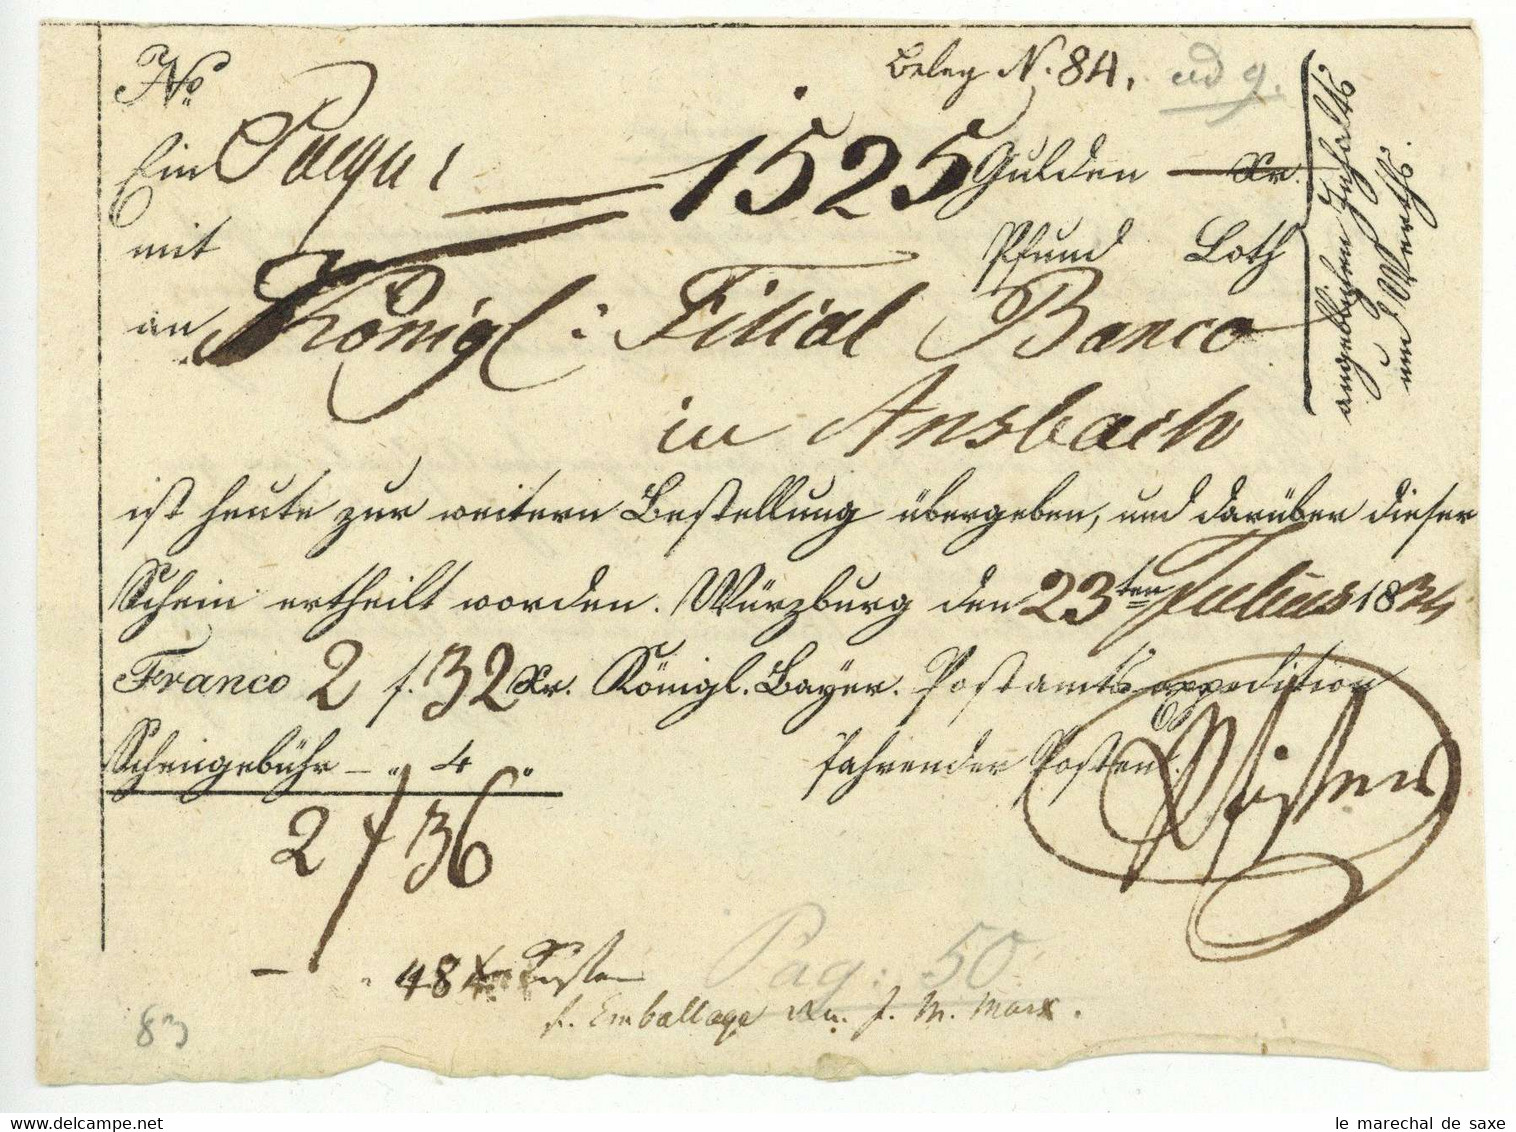 Würzburg 1834 Postschein Nach Ansbach Königreich Bayern Expedition Fahrender Posten - 1800 – 1899